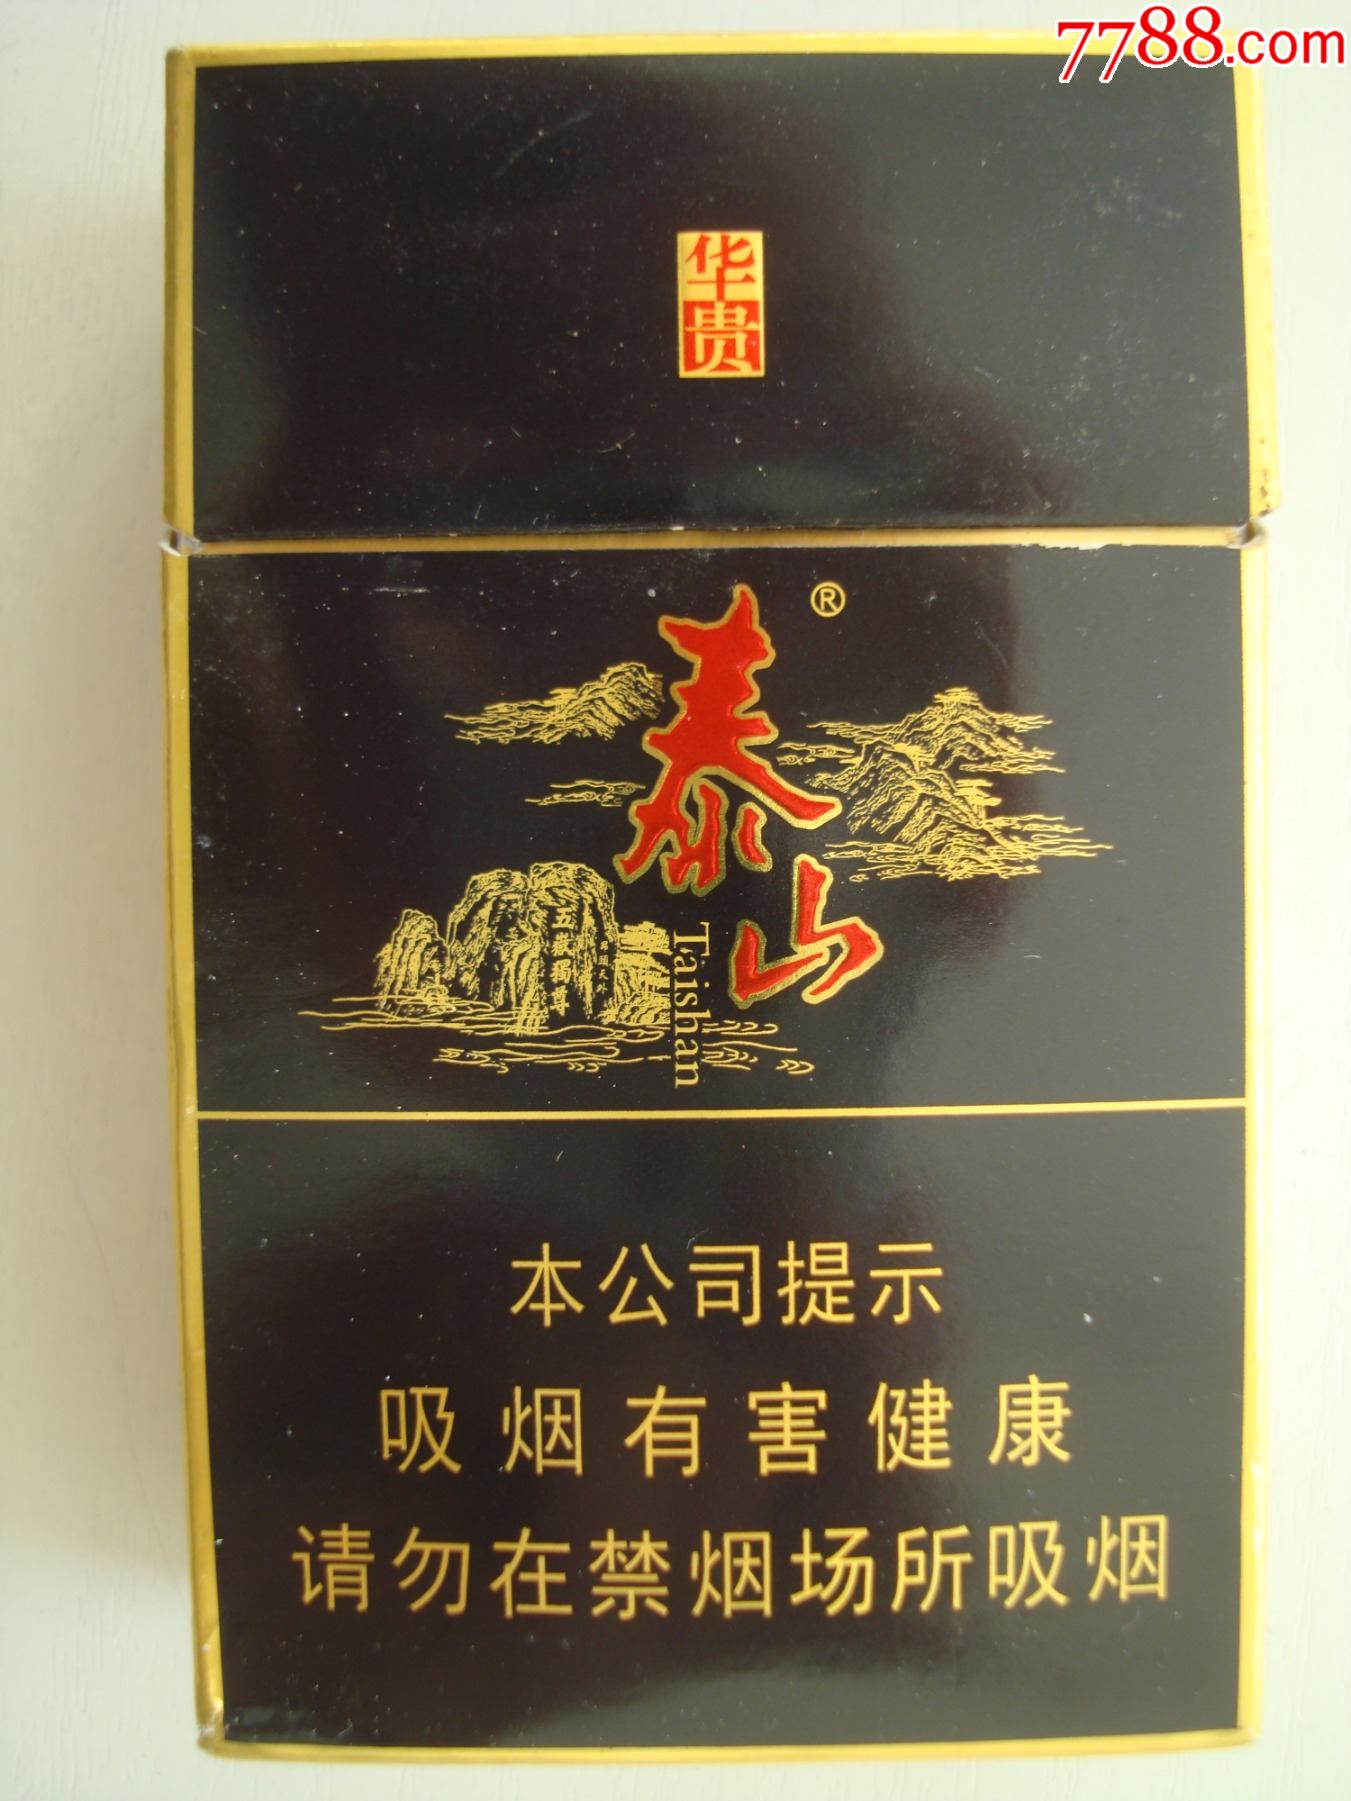 泰山30元一盒的烟图片